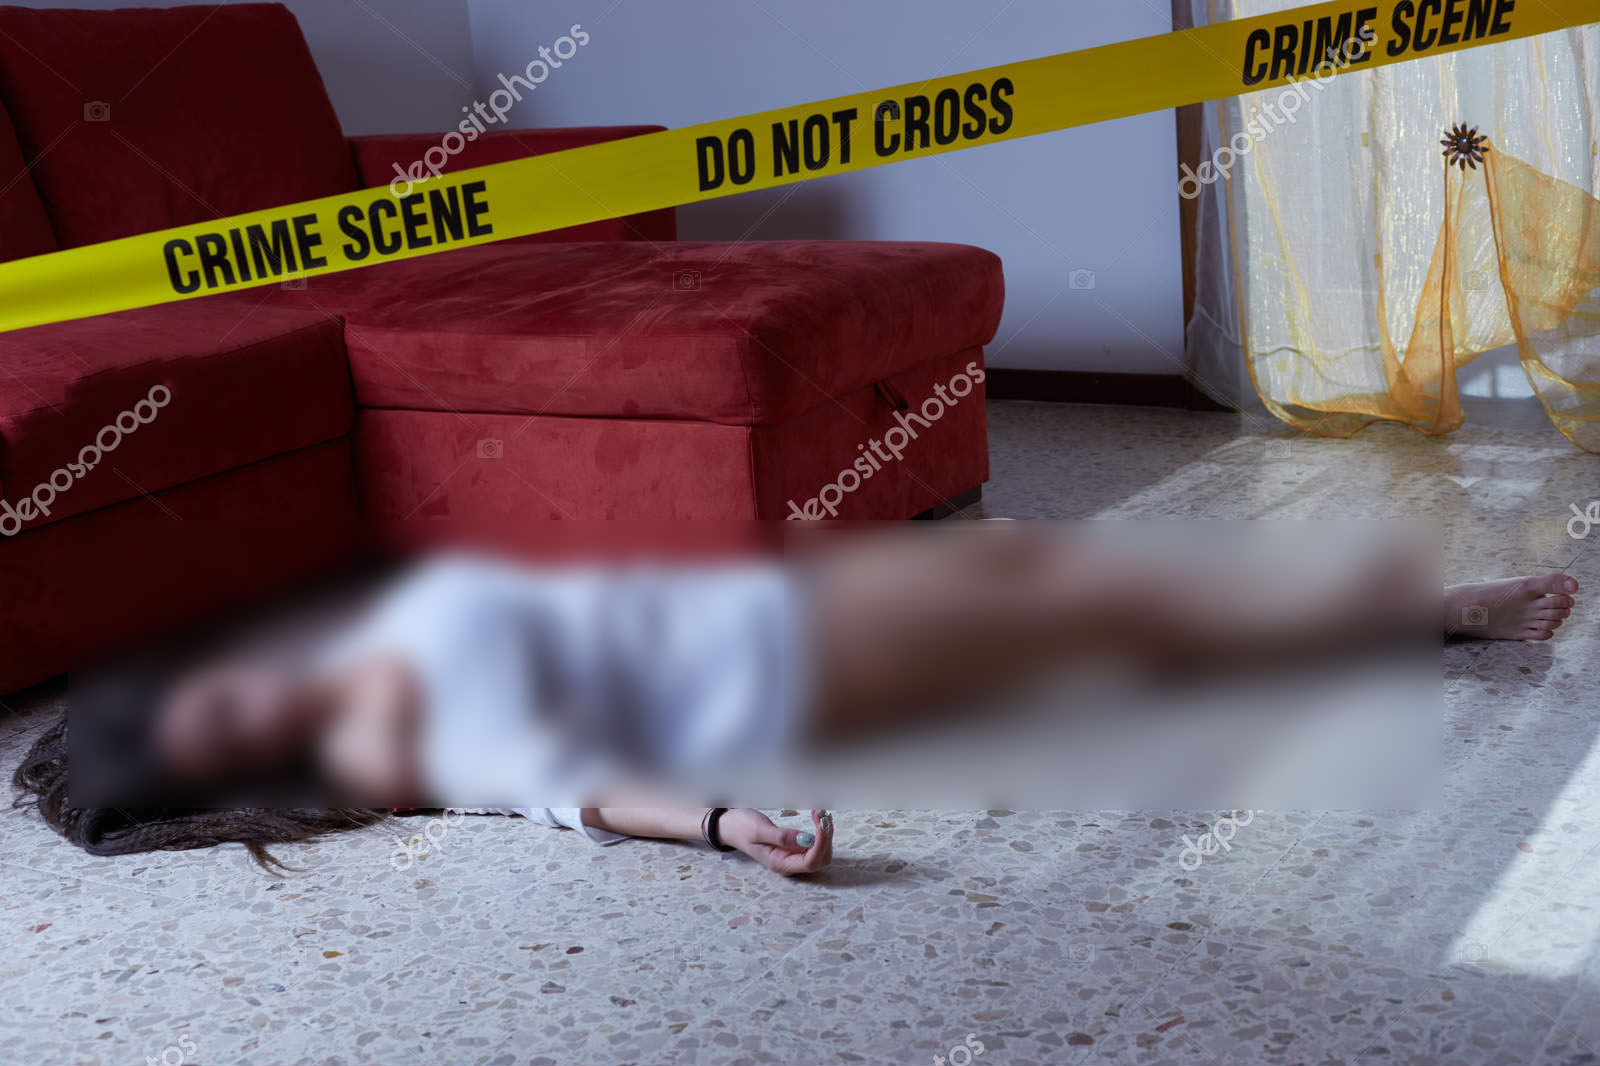 Thi thể người phụ nữ Việt được tìm thấy trên sàn phòng ngủ tại căn hộ đi thuê. Ảnh minh họa: Deposit Photos